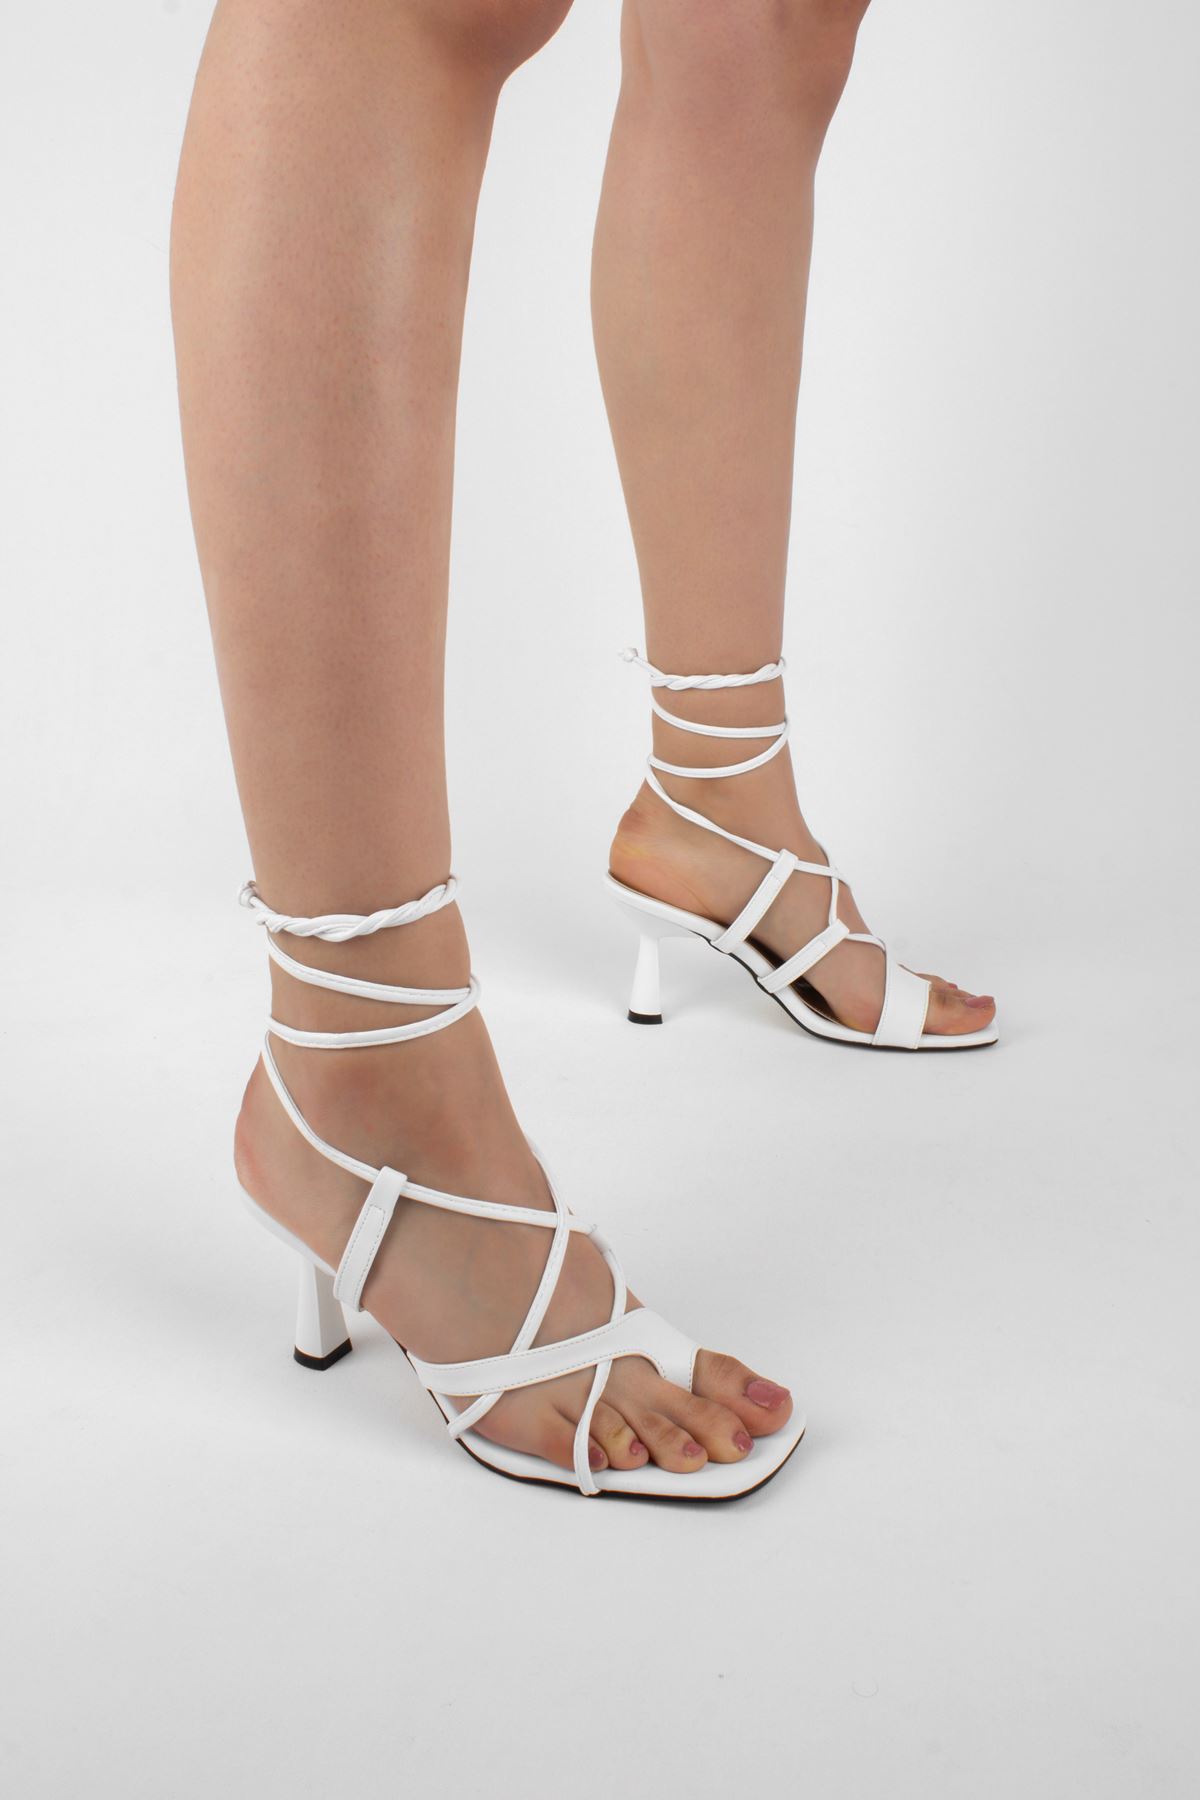 Olive Kadın Topuklu Ayakkabı Parmak Geçme Detaylı-beyaz